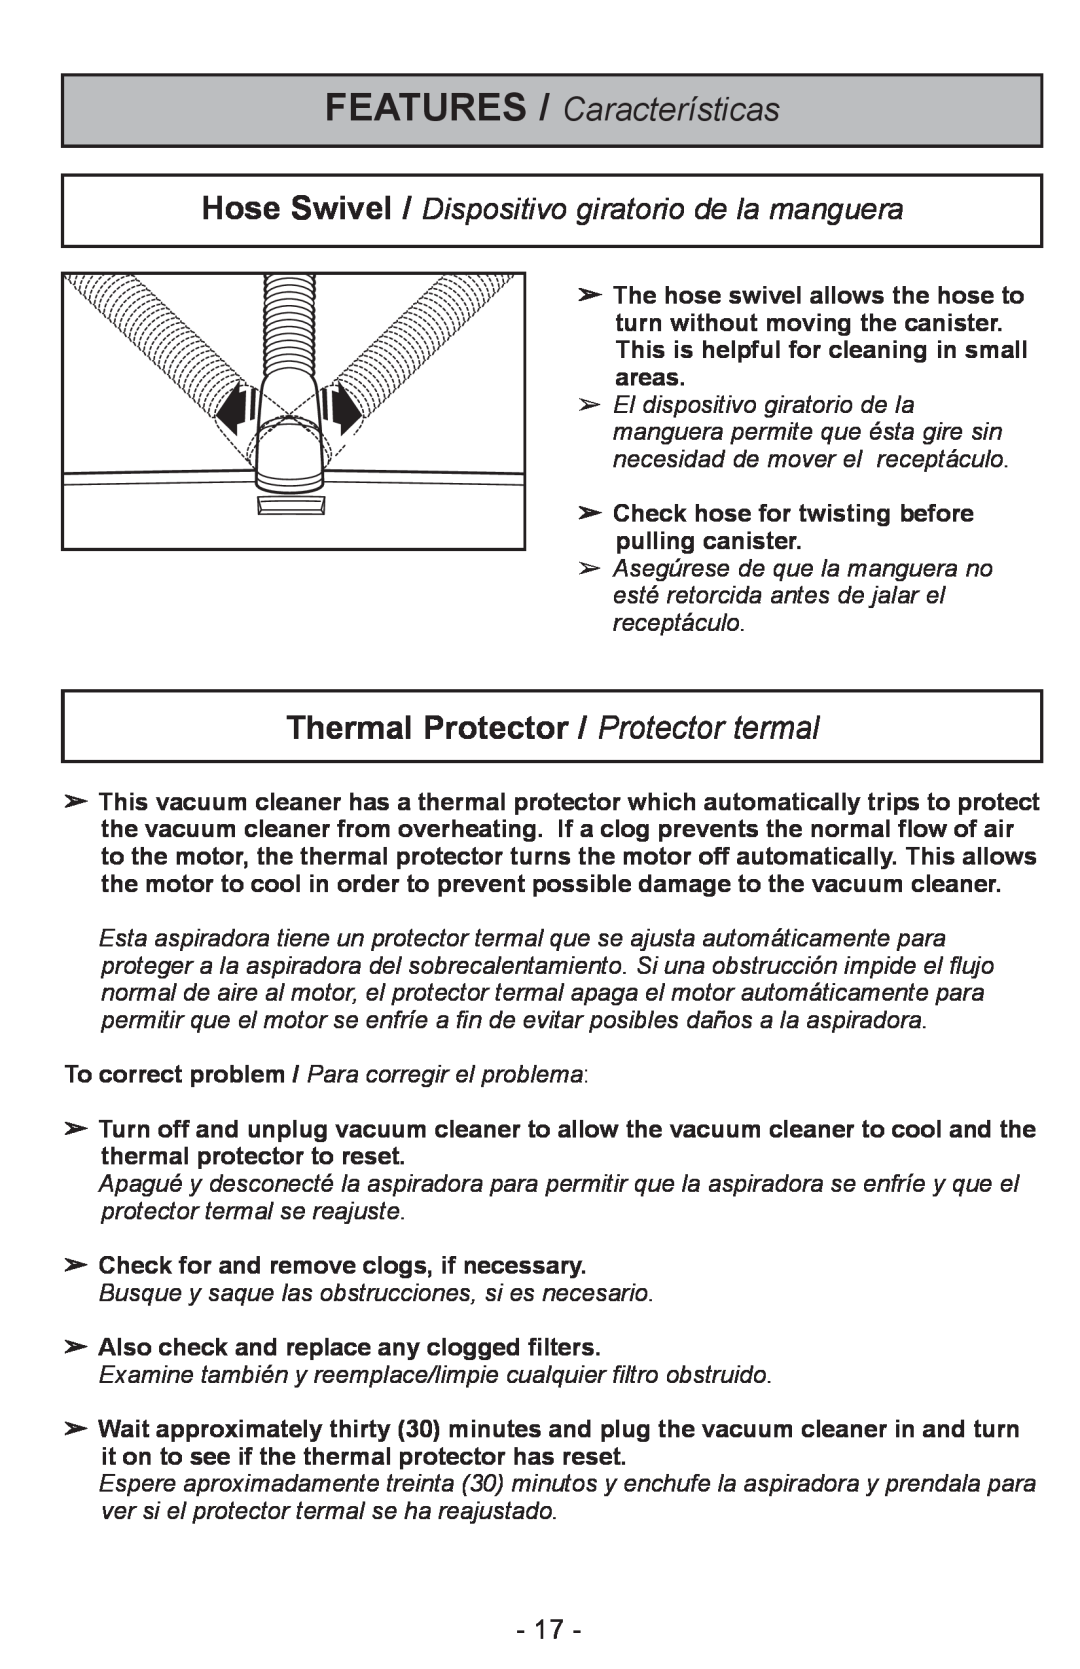 Panasonic MC-CL310 manual FEATURES / Características, Thermal Protector / Protector termal 